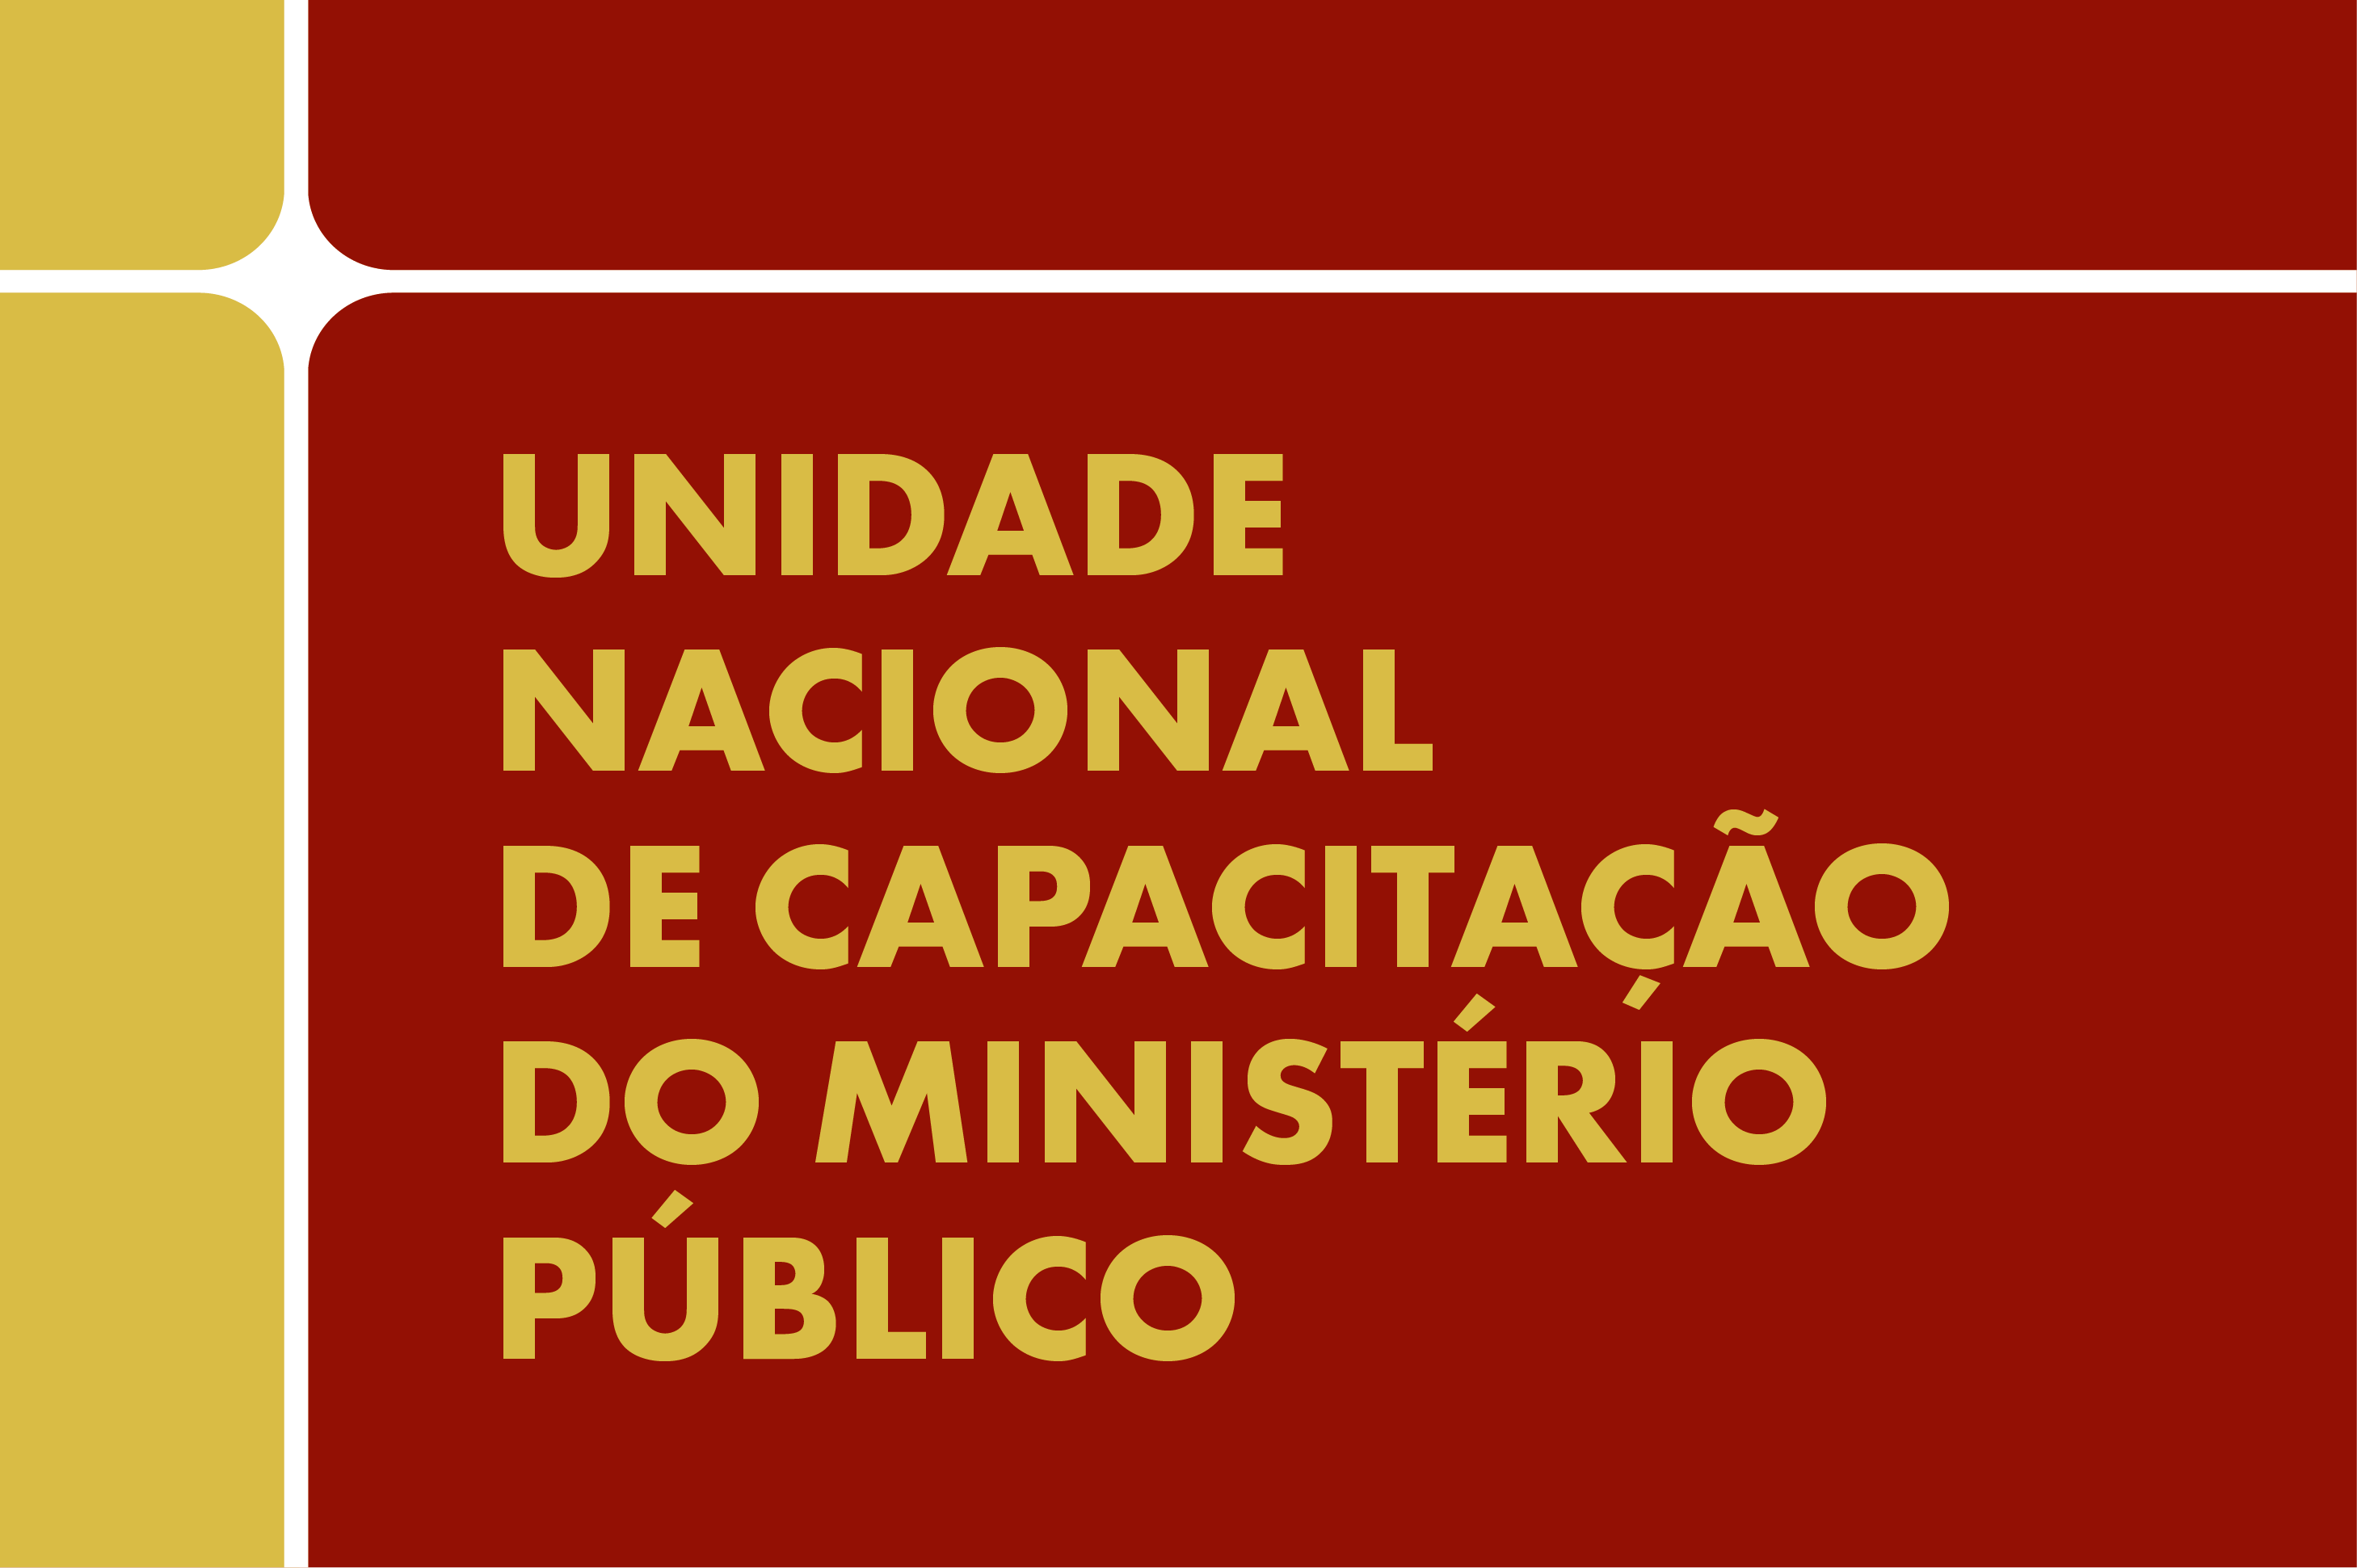 SECOM Banner Noticia institucional ID 2023 Unidade Nacional de Capacitacao do Ministeriio Publico 